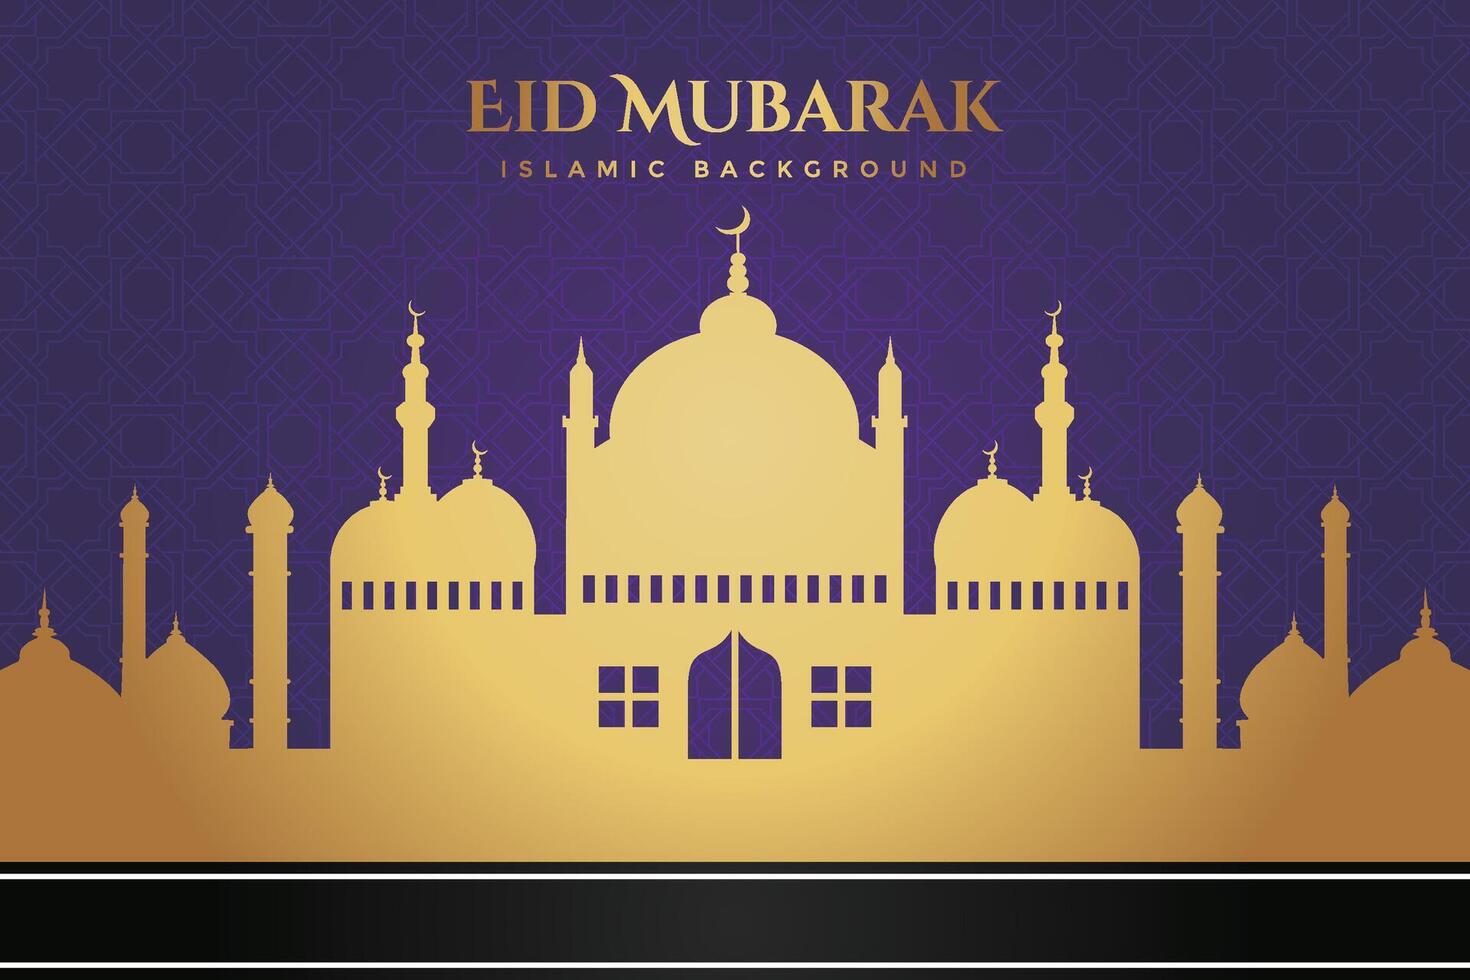 eid al-fitr, Ramadhan dekorativ hälsning kort vektor